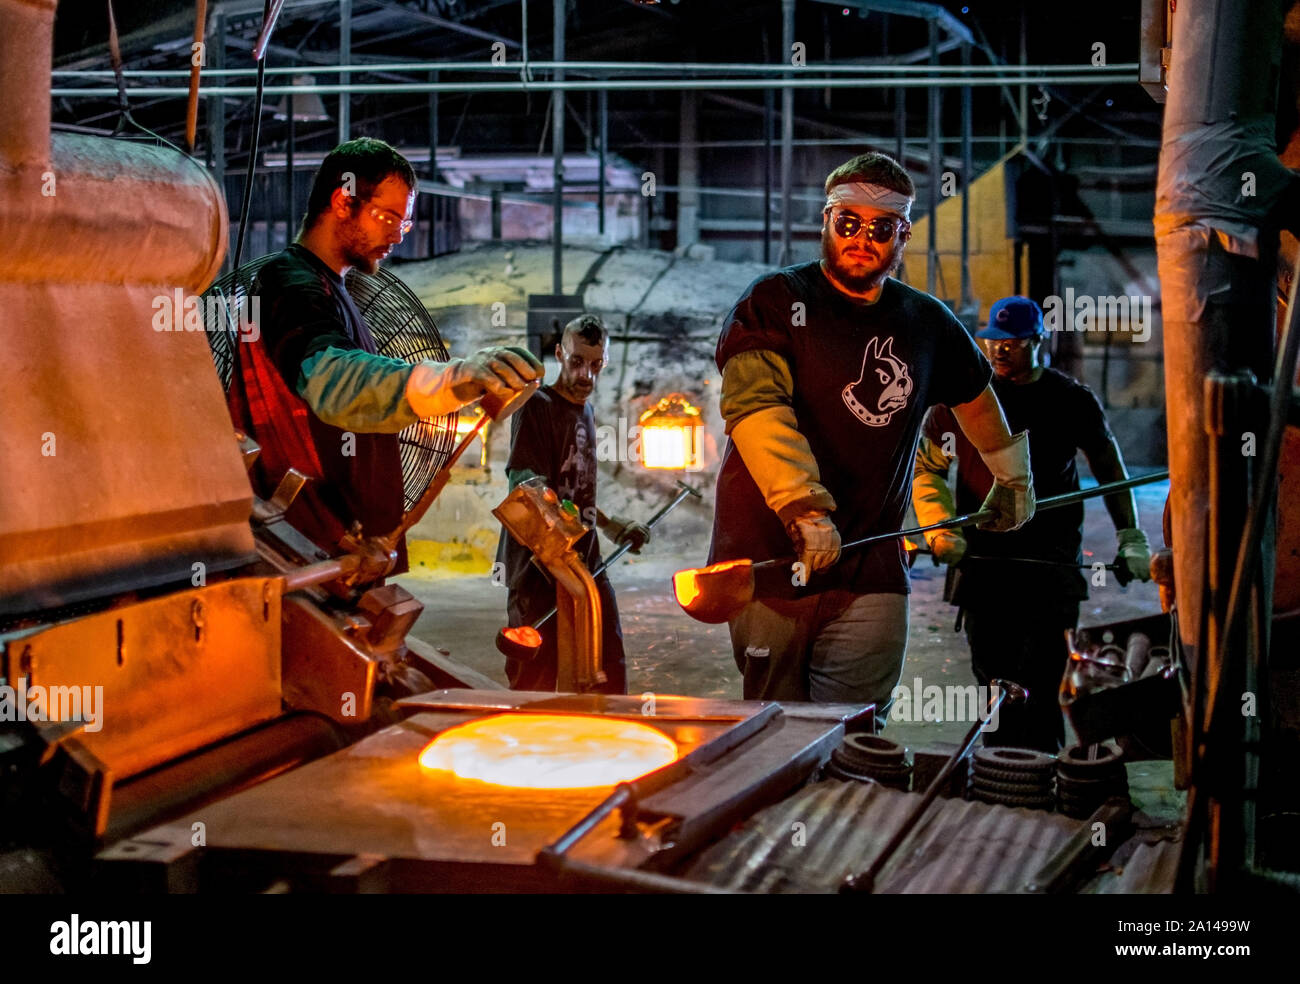 27 sett 2019 Kokomo Indiana America; i lavoratori a North American fabbrica del vetro, portare il crogiolo di mestoli di vetro fuso che poi lo scarico su un metallo shee Foto Stock